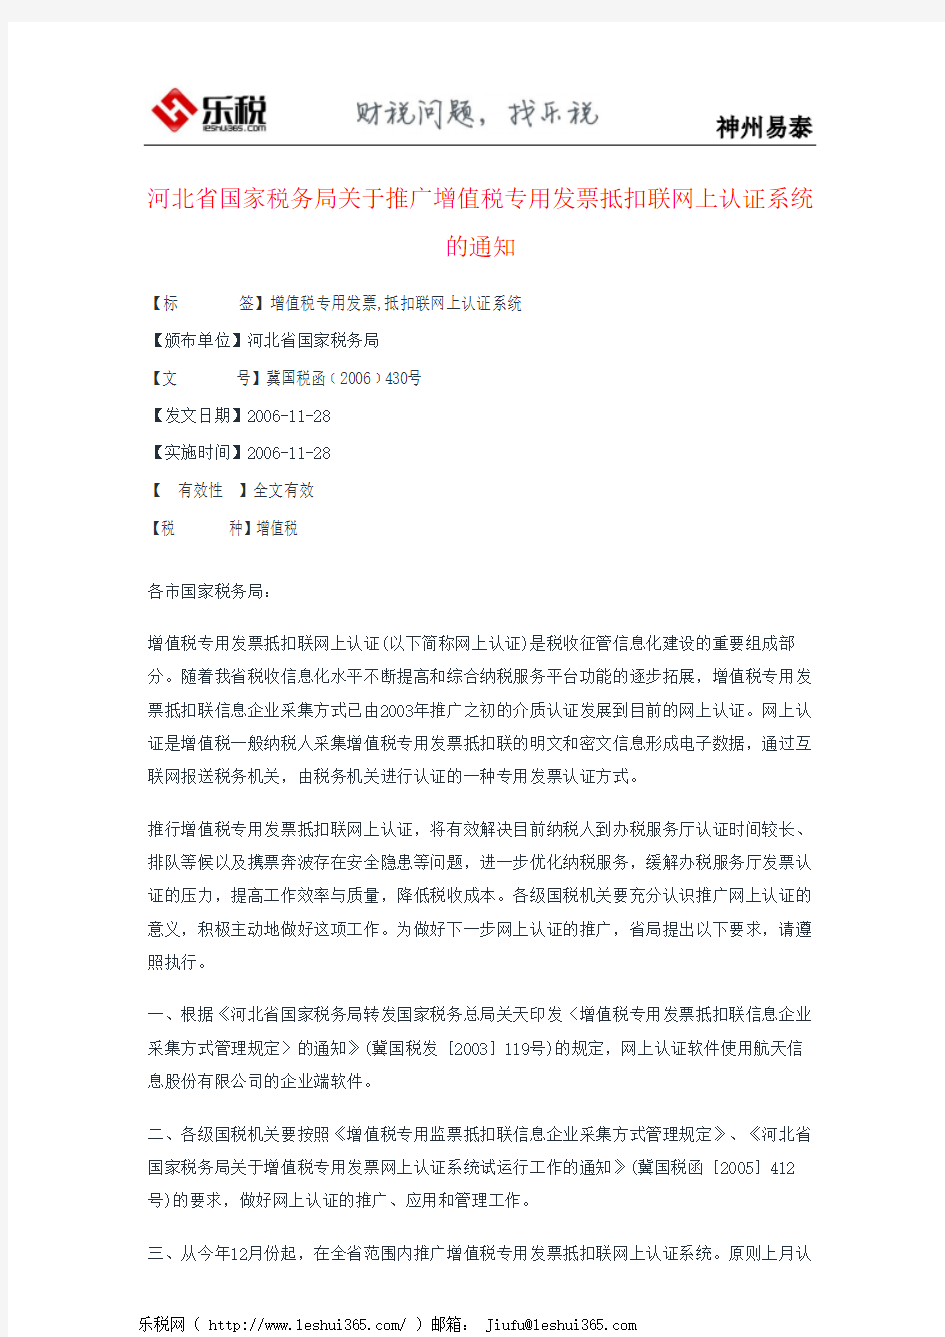 河北省国家税务局关于推广增值税专用发票抵扣联网上认证系统的通知